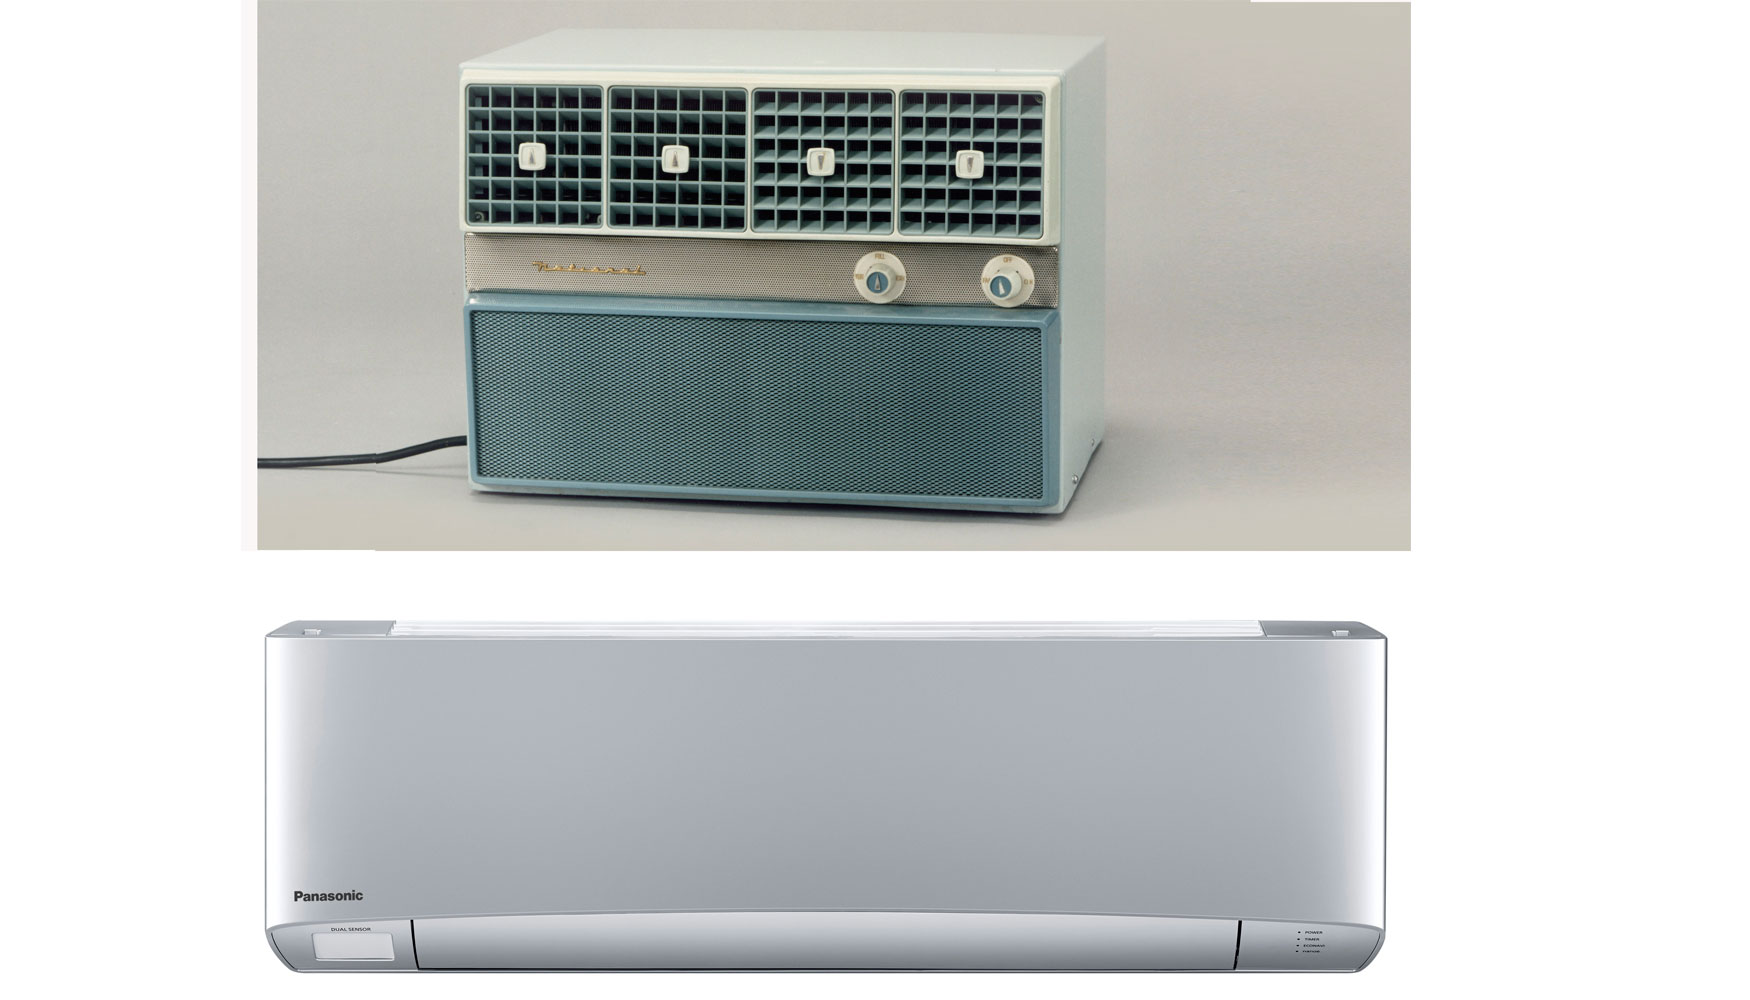 Evolucin de los equipos de aire acondicionado Panasonic desde el primer modelo lanzado en 1958 al diseo actual